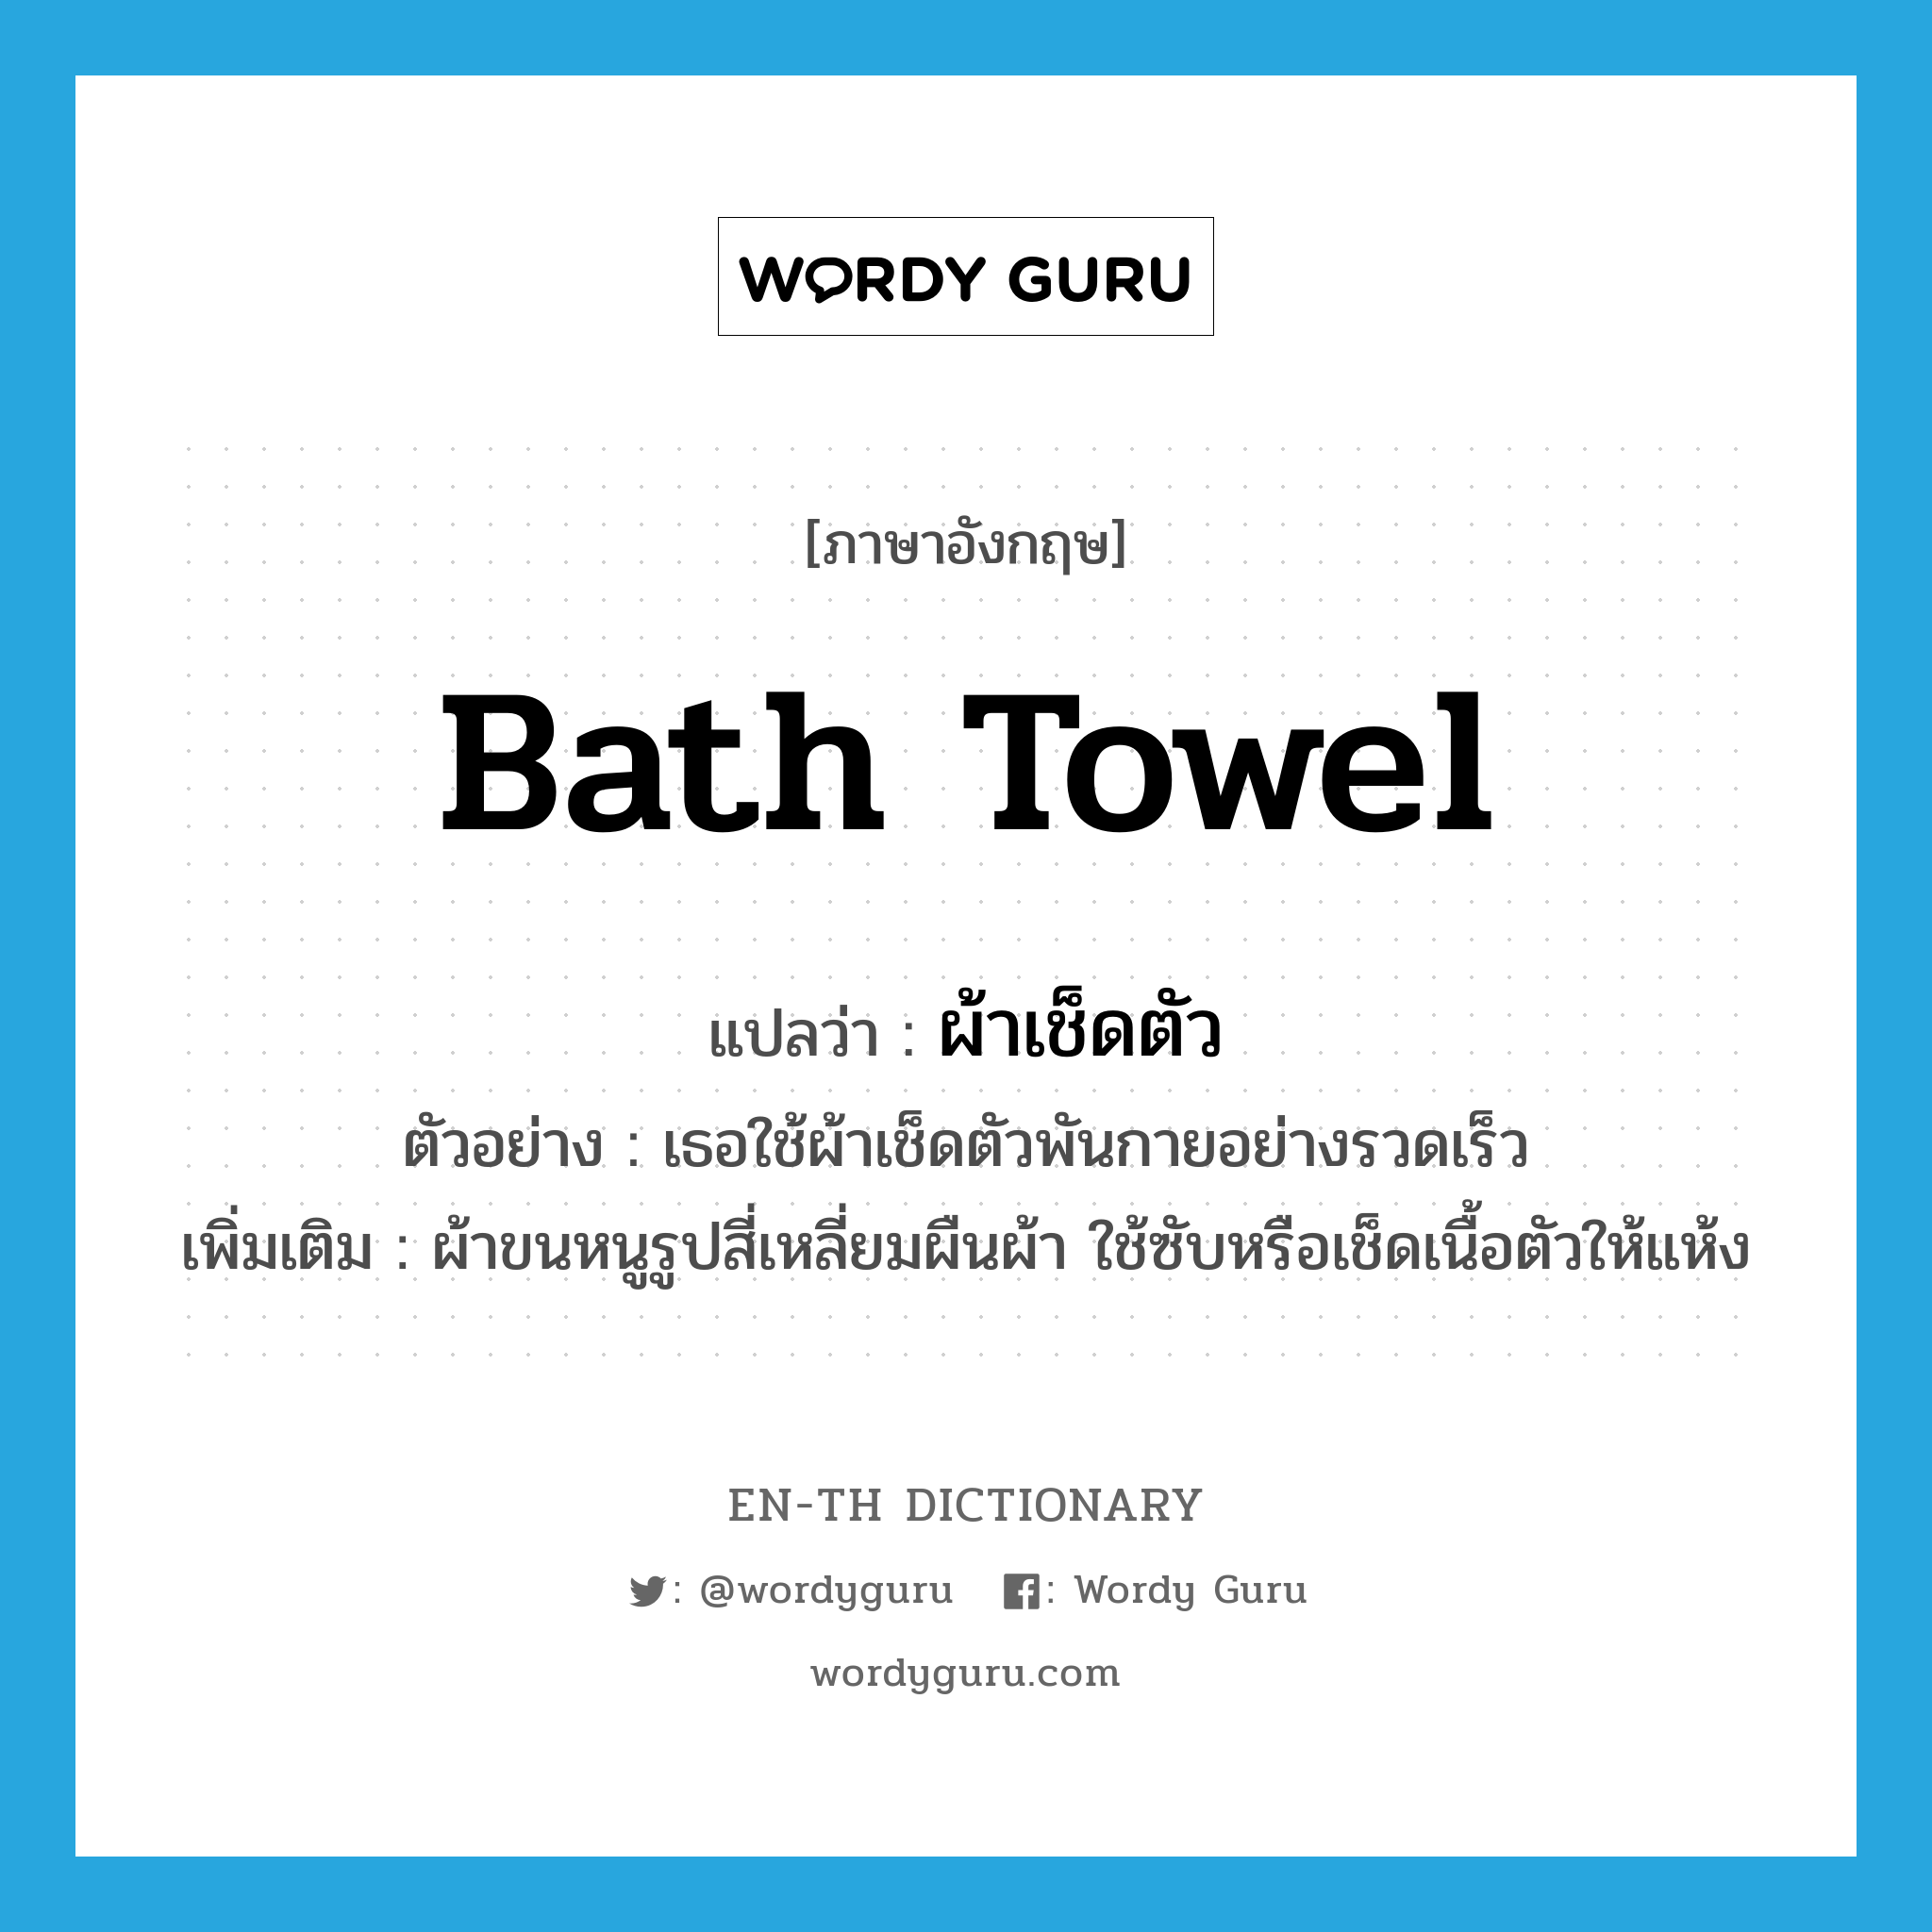 bath towel แปลว่า?, คำศัพท์ภาษาอังกฤษ bath towel แปลว่า ผ้าเช็ดตัว ประเภท N ตัวอย่าง เธอใช้ผ้าเช็ดตัวพันกายอย่างรวดเร็ว เพิ่มเติม ผ้าขนหนูรูปสี่เหลี่ยมผืนผ้า ใช้ซับหรือเช็ดเนื้อตัวให้แห้ง หมวด N